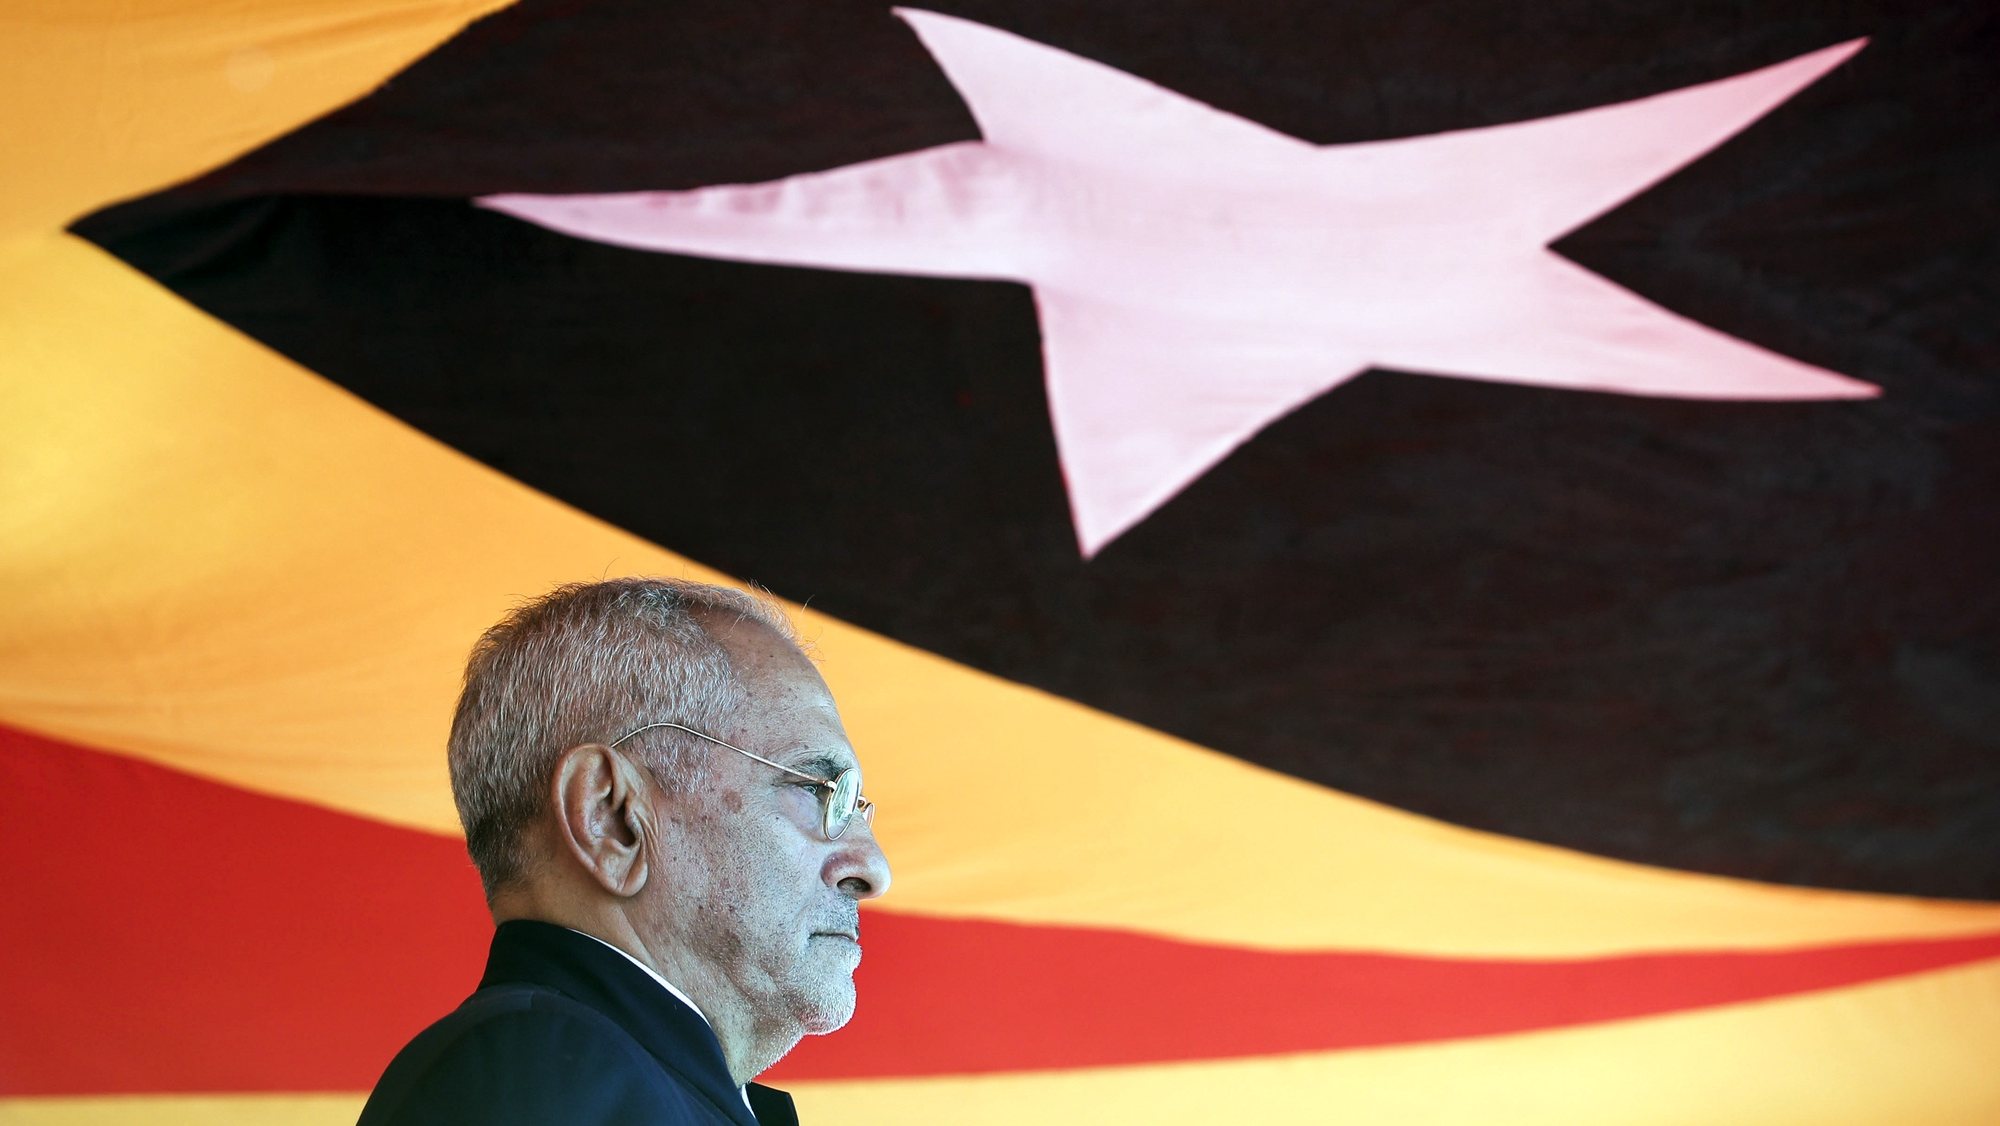 O novo Presidente de Timor-Leste, José Ramos-Horta, durante as comemorações do 20.º aniversário da Restauração da Independência, em Dili, Timor-Leste, 20 de maio de 2022. ANTÓNIO COTRIM/LUSA